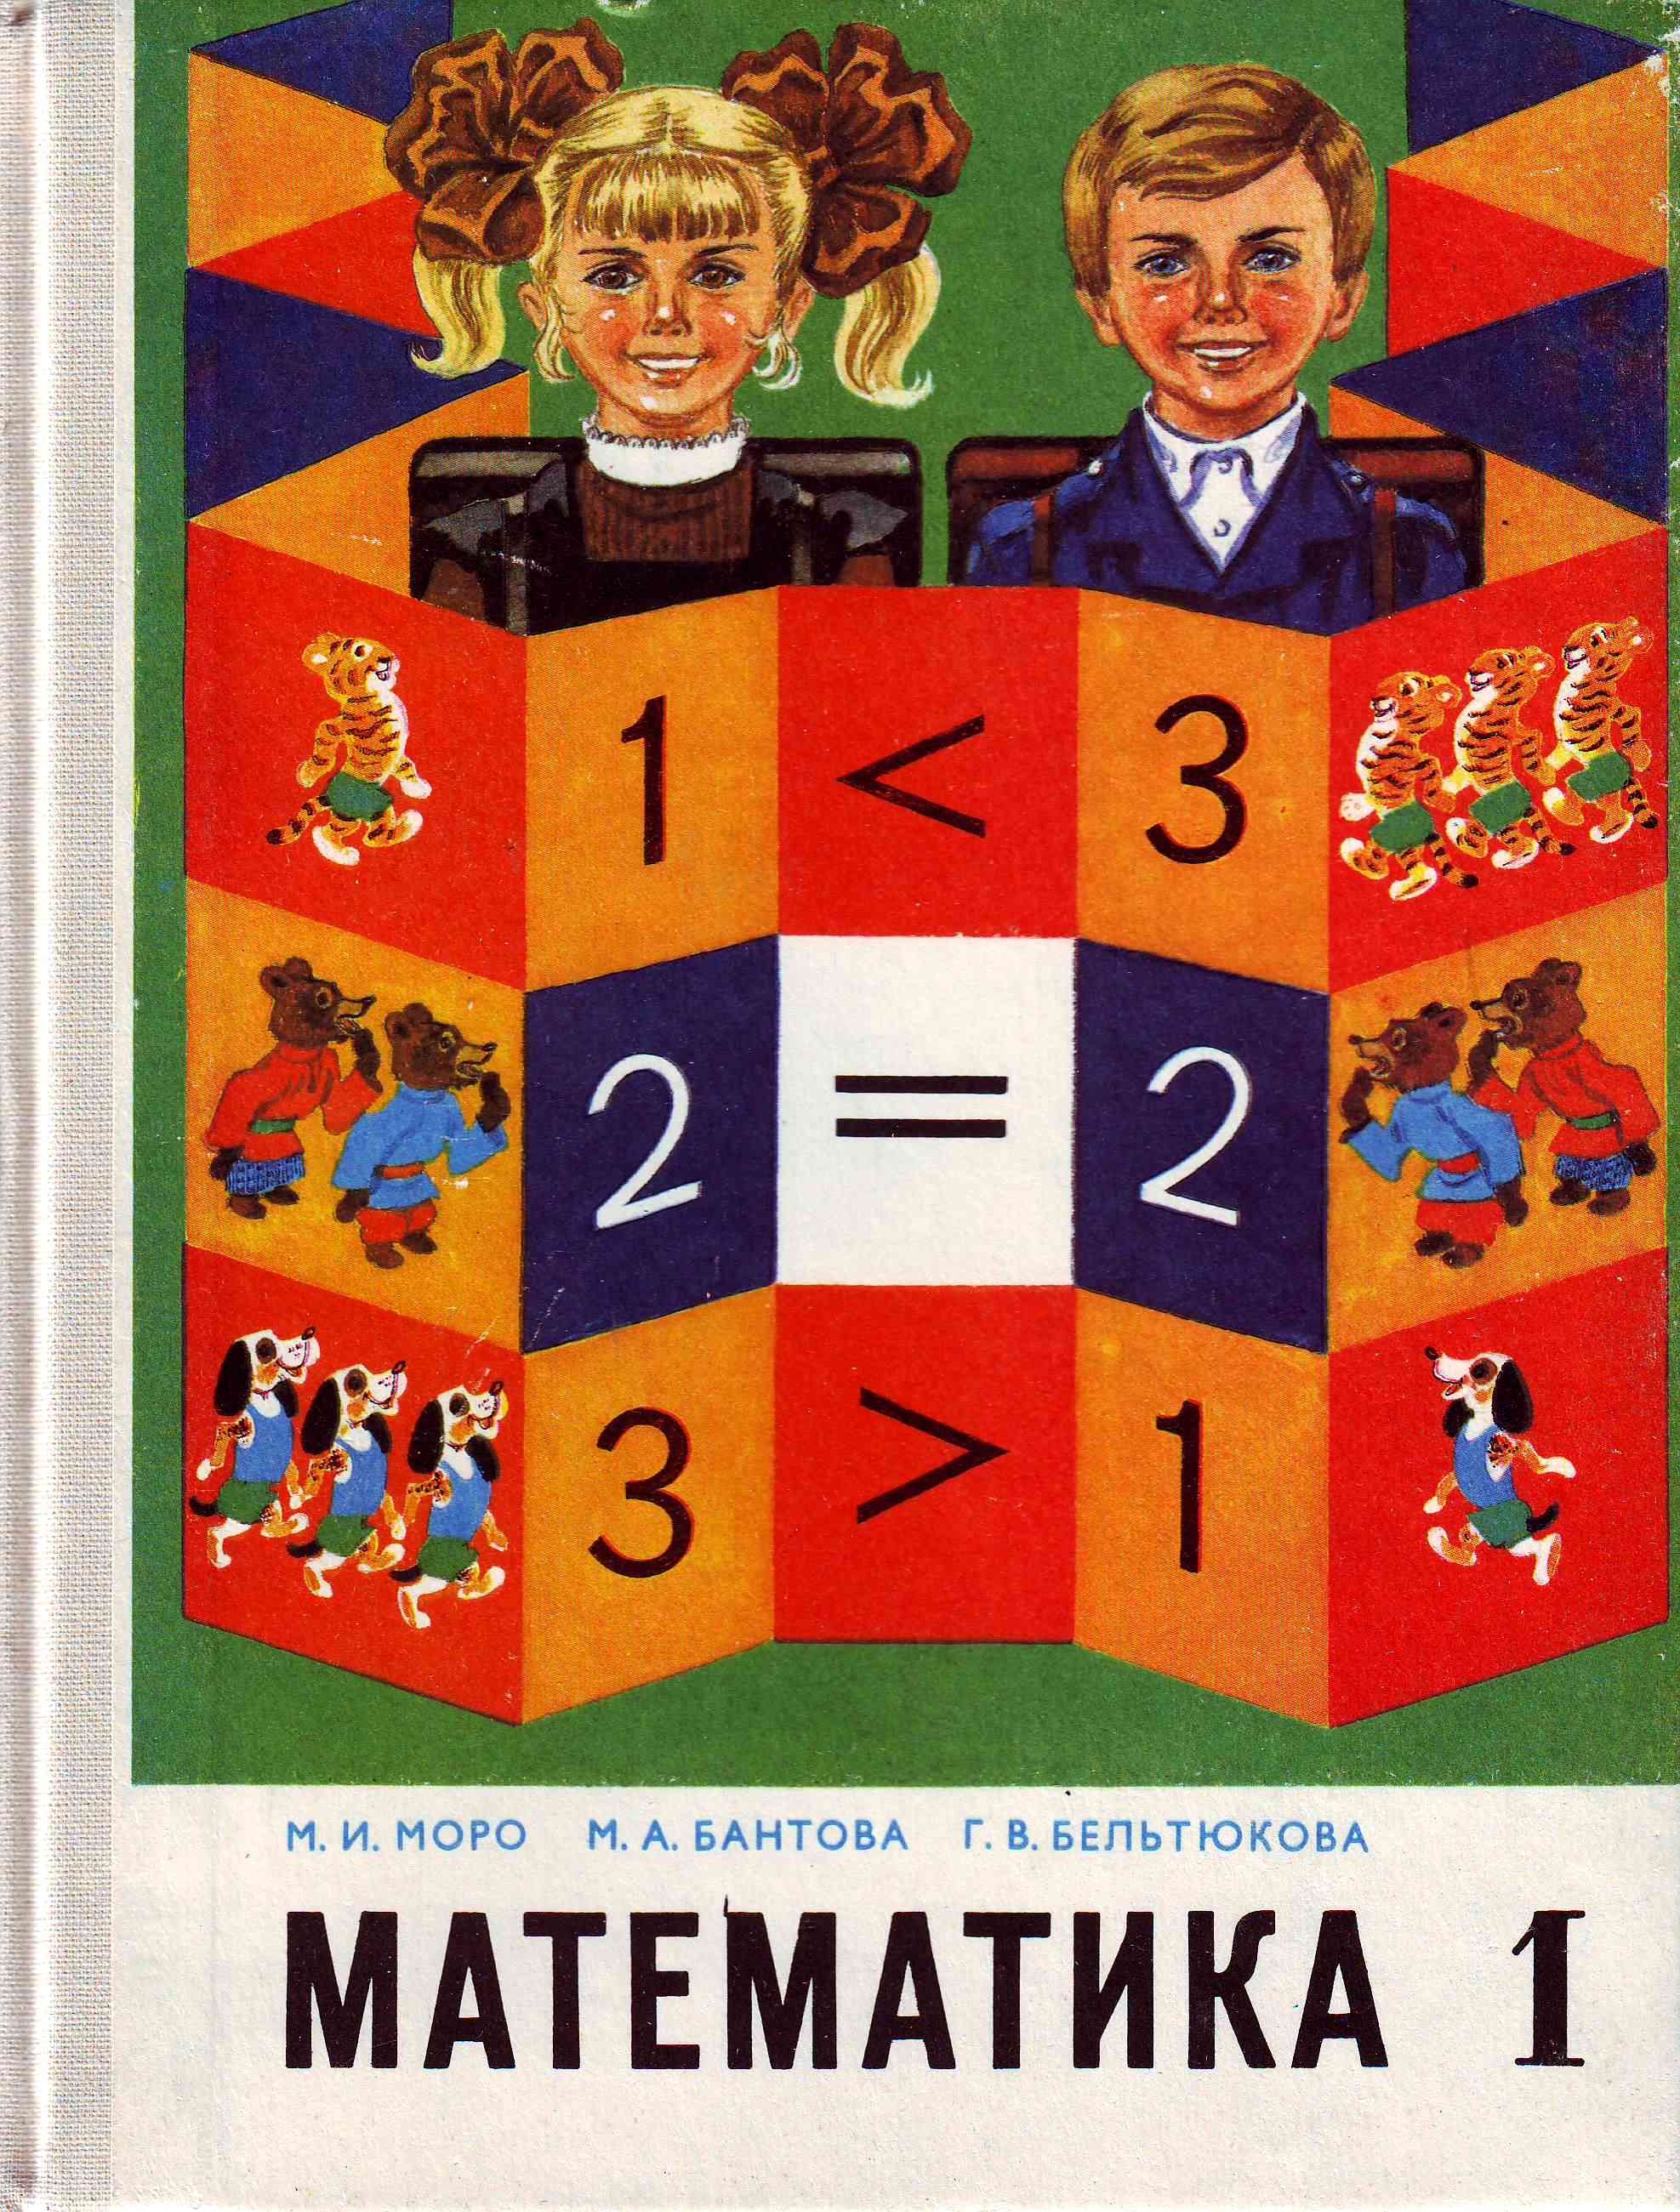 Детские книги 7 класс. Математика 1 Советский учебник Моро. Советские книги по математике. Старые учебники по математике. Советские учебники математики.